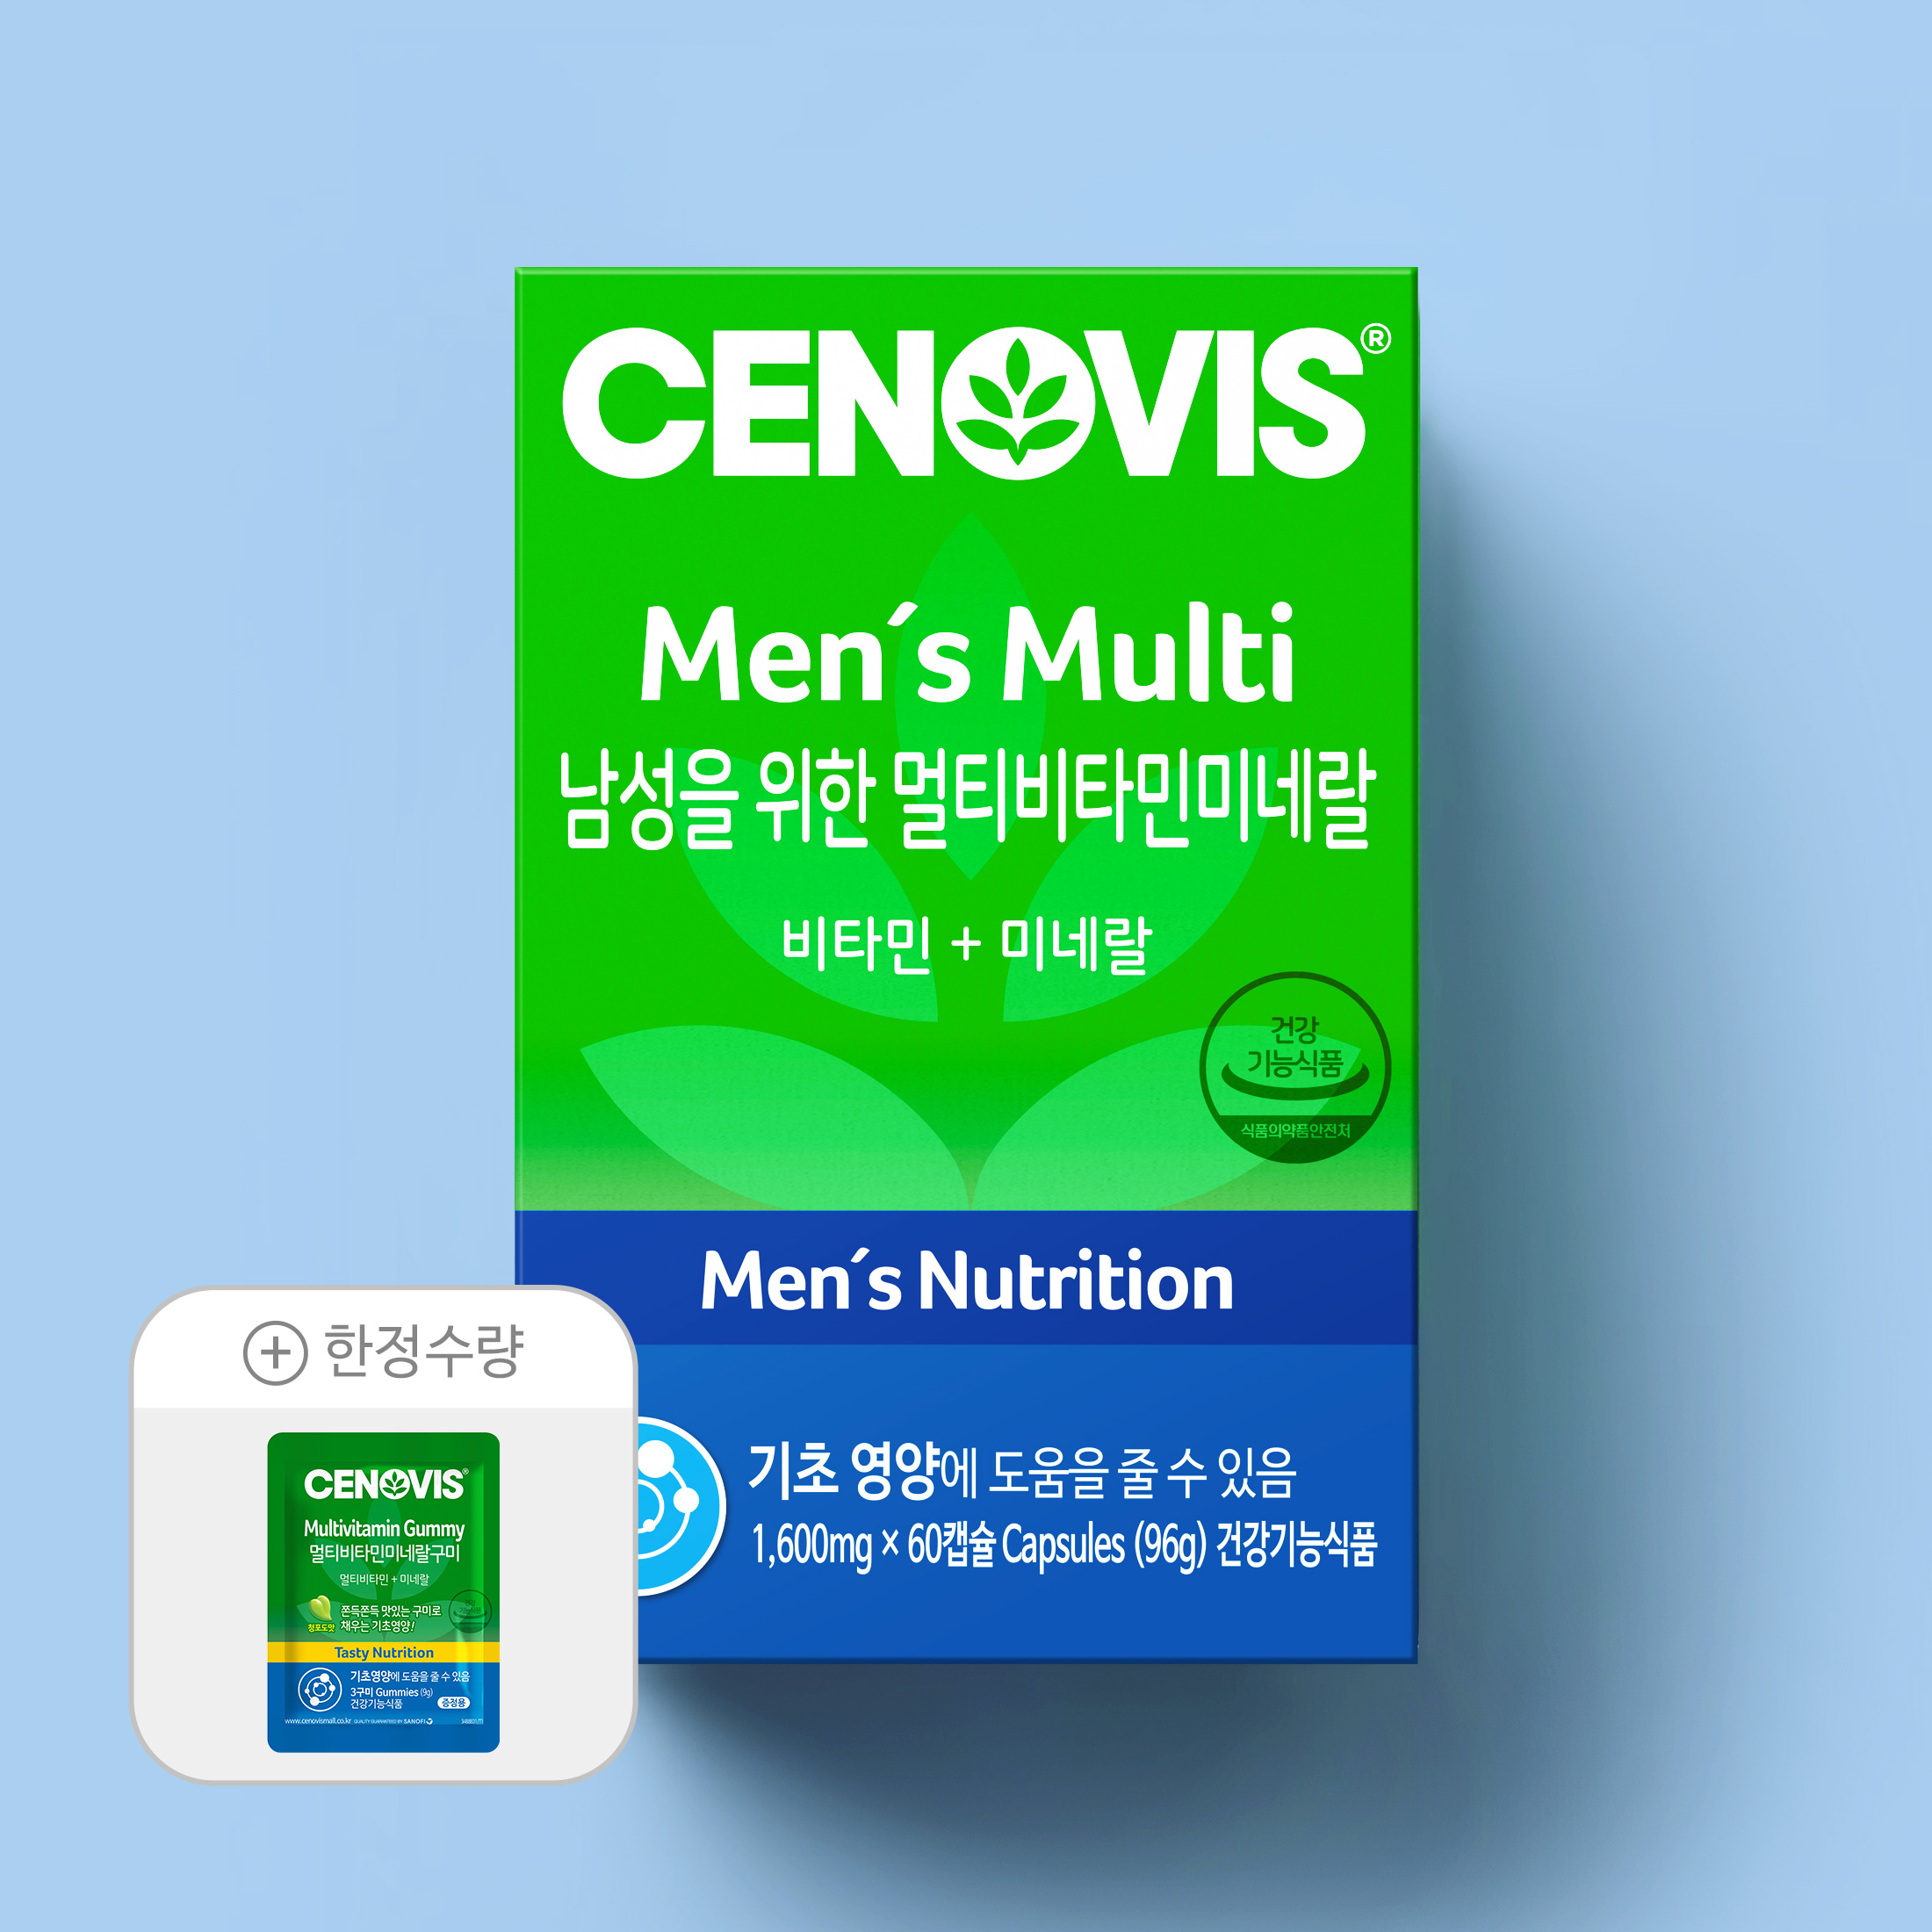 [이달의추천] 남성용멀티비타민 + 한정수량 사은품 증정!